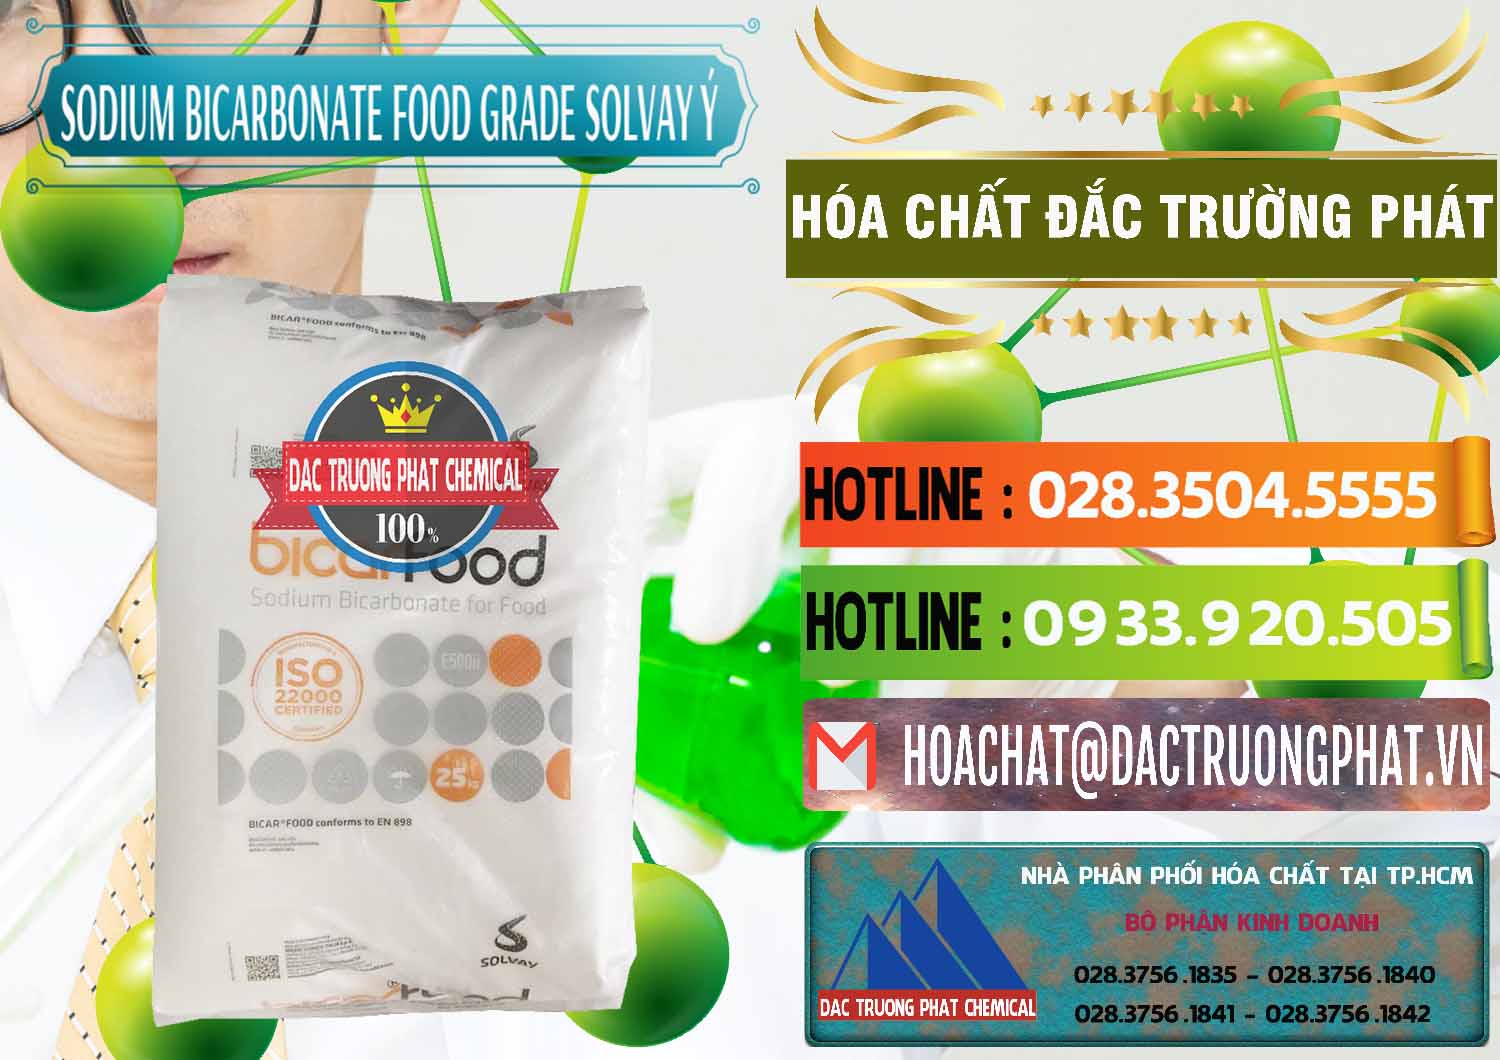 Kinh doanh & bán Sodium Bicarbonate – Bicar NaHCO3 Food Grade Solvay Ý Italy - 0220 - Nơi phân phối & kinh doanh hóa chất tại TP.HCM - cungcaphoachat.com.vn